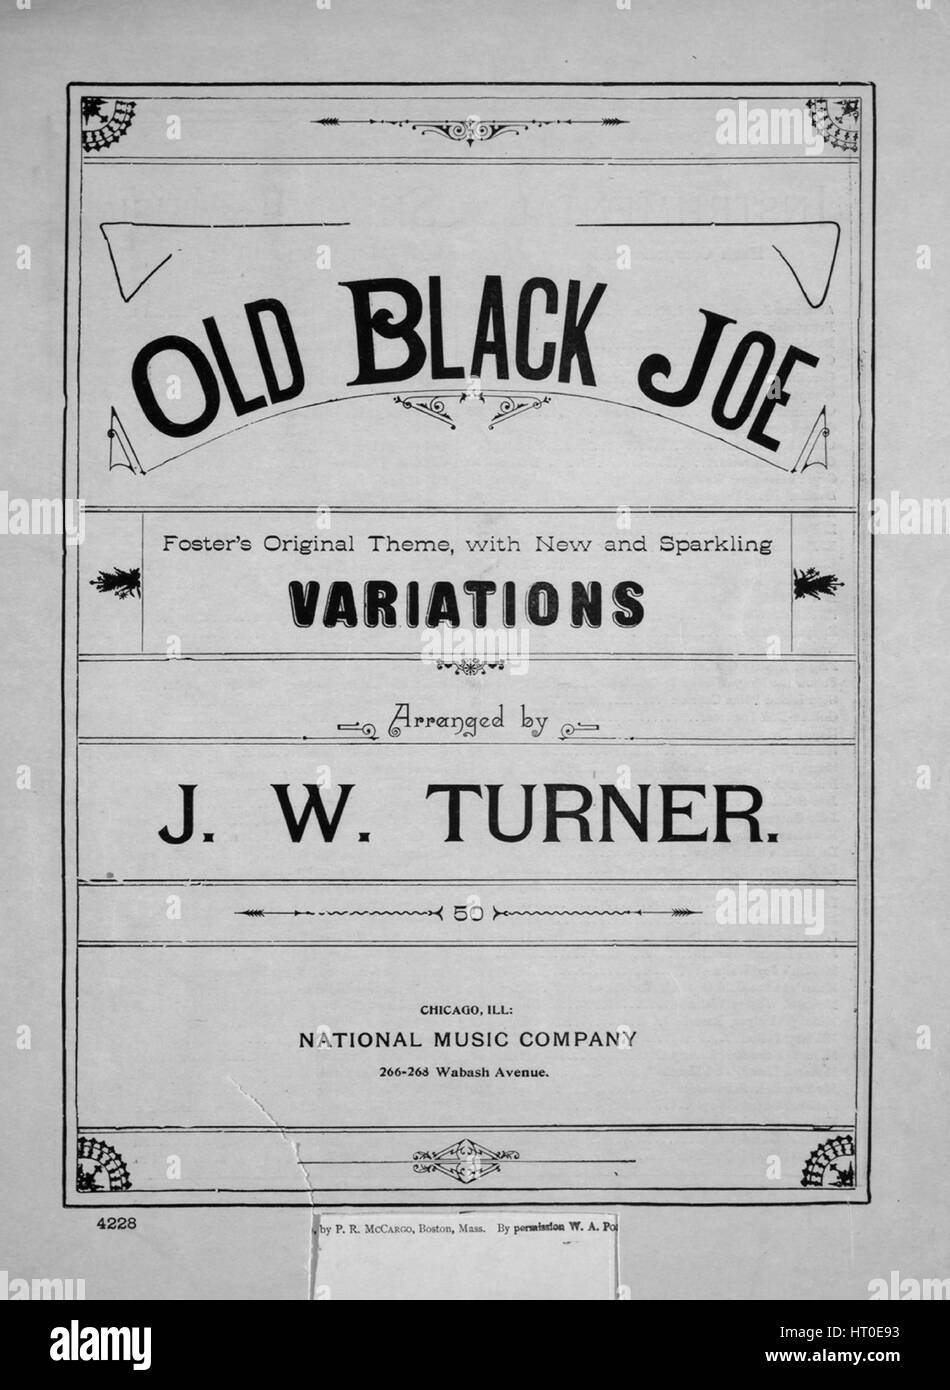 Noten-Cover-Bild des Liedes "Old Black Joe Foster Originalthema, mit neuen  und prickelnden Variationen", mit ursprünglichen Autorschaft Noten lesen  "Arrangiert von JW Turner", 1889. Der Verlag als "National Music Company,  266-268 Wabash Avenue"